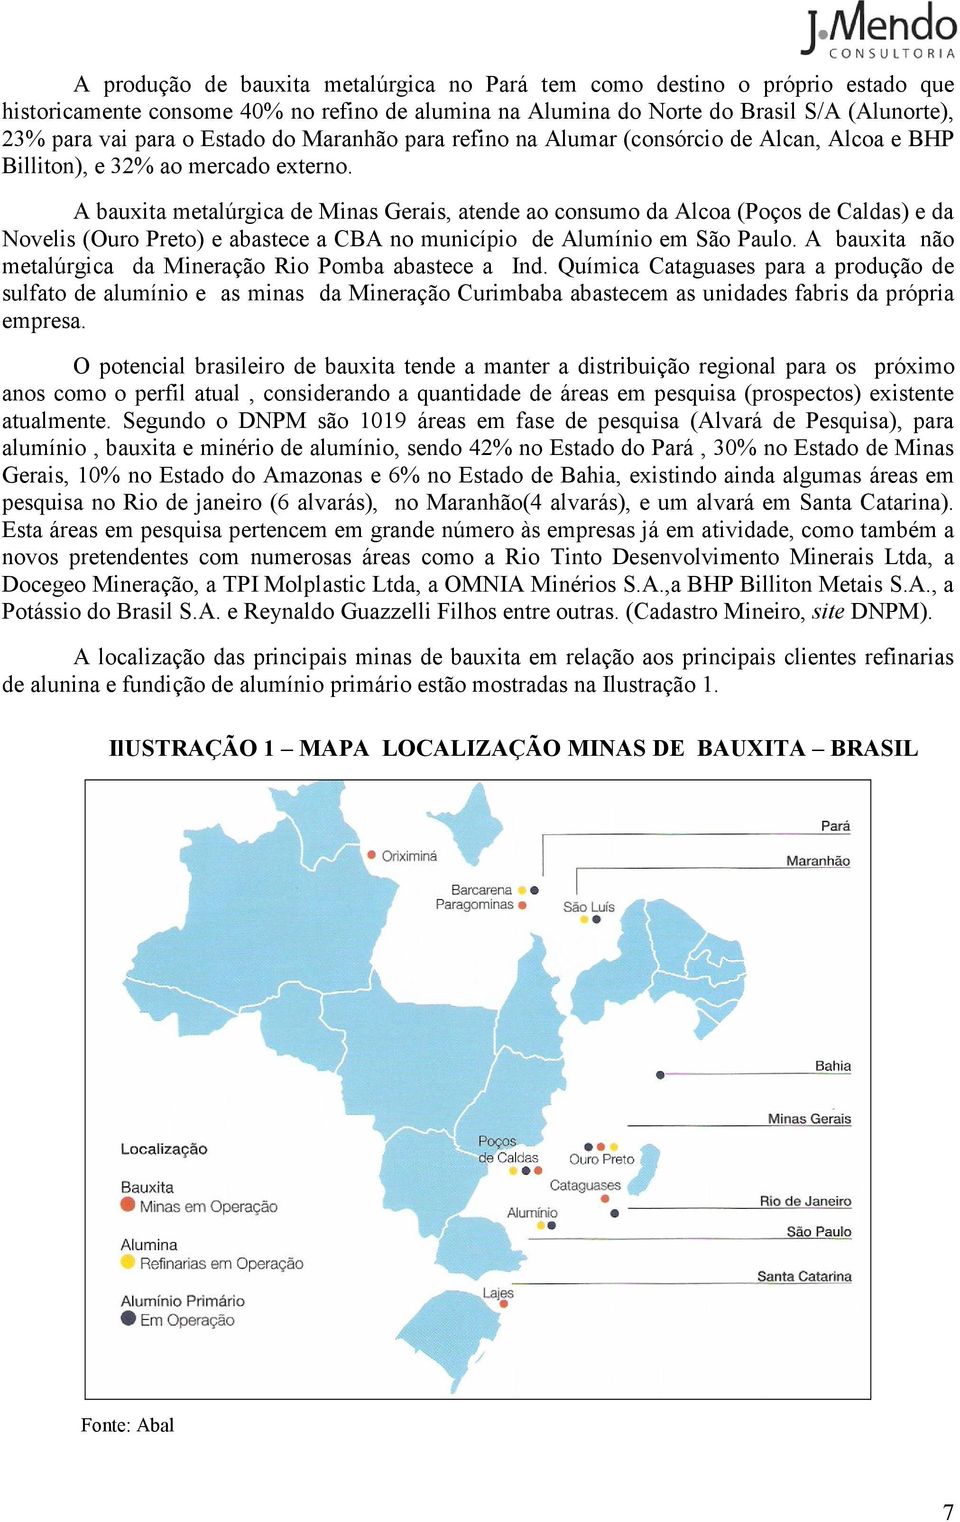 A bauxita metalúrgica de Minas Gerais, atende ao consumo da Alcoa (Poços de Caldas) e da Novelis (Ouro Preto) e abastece a CBA no município de Alumínio em São Paulo.